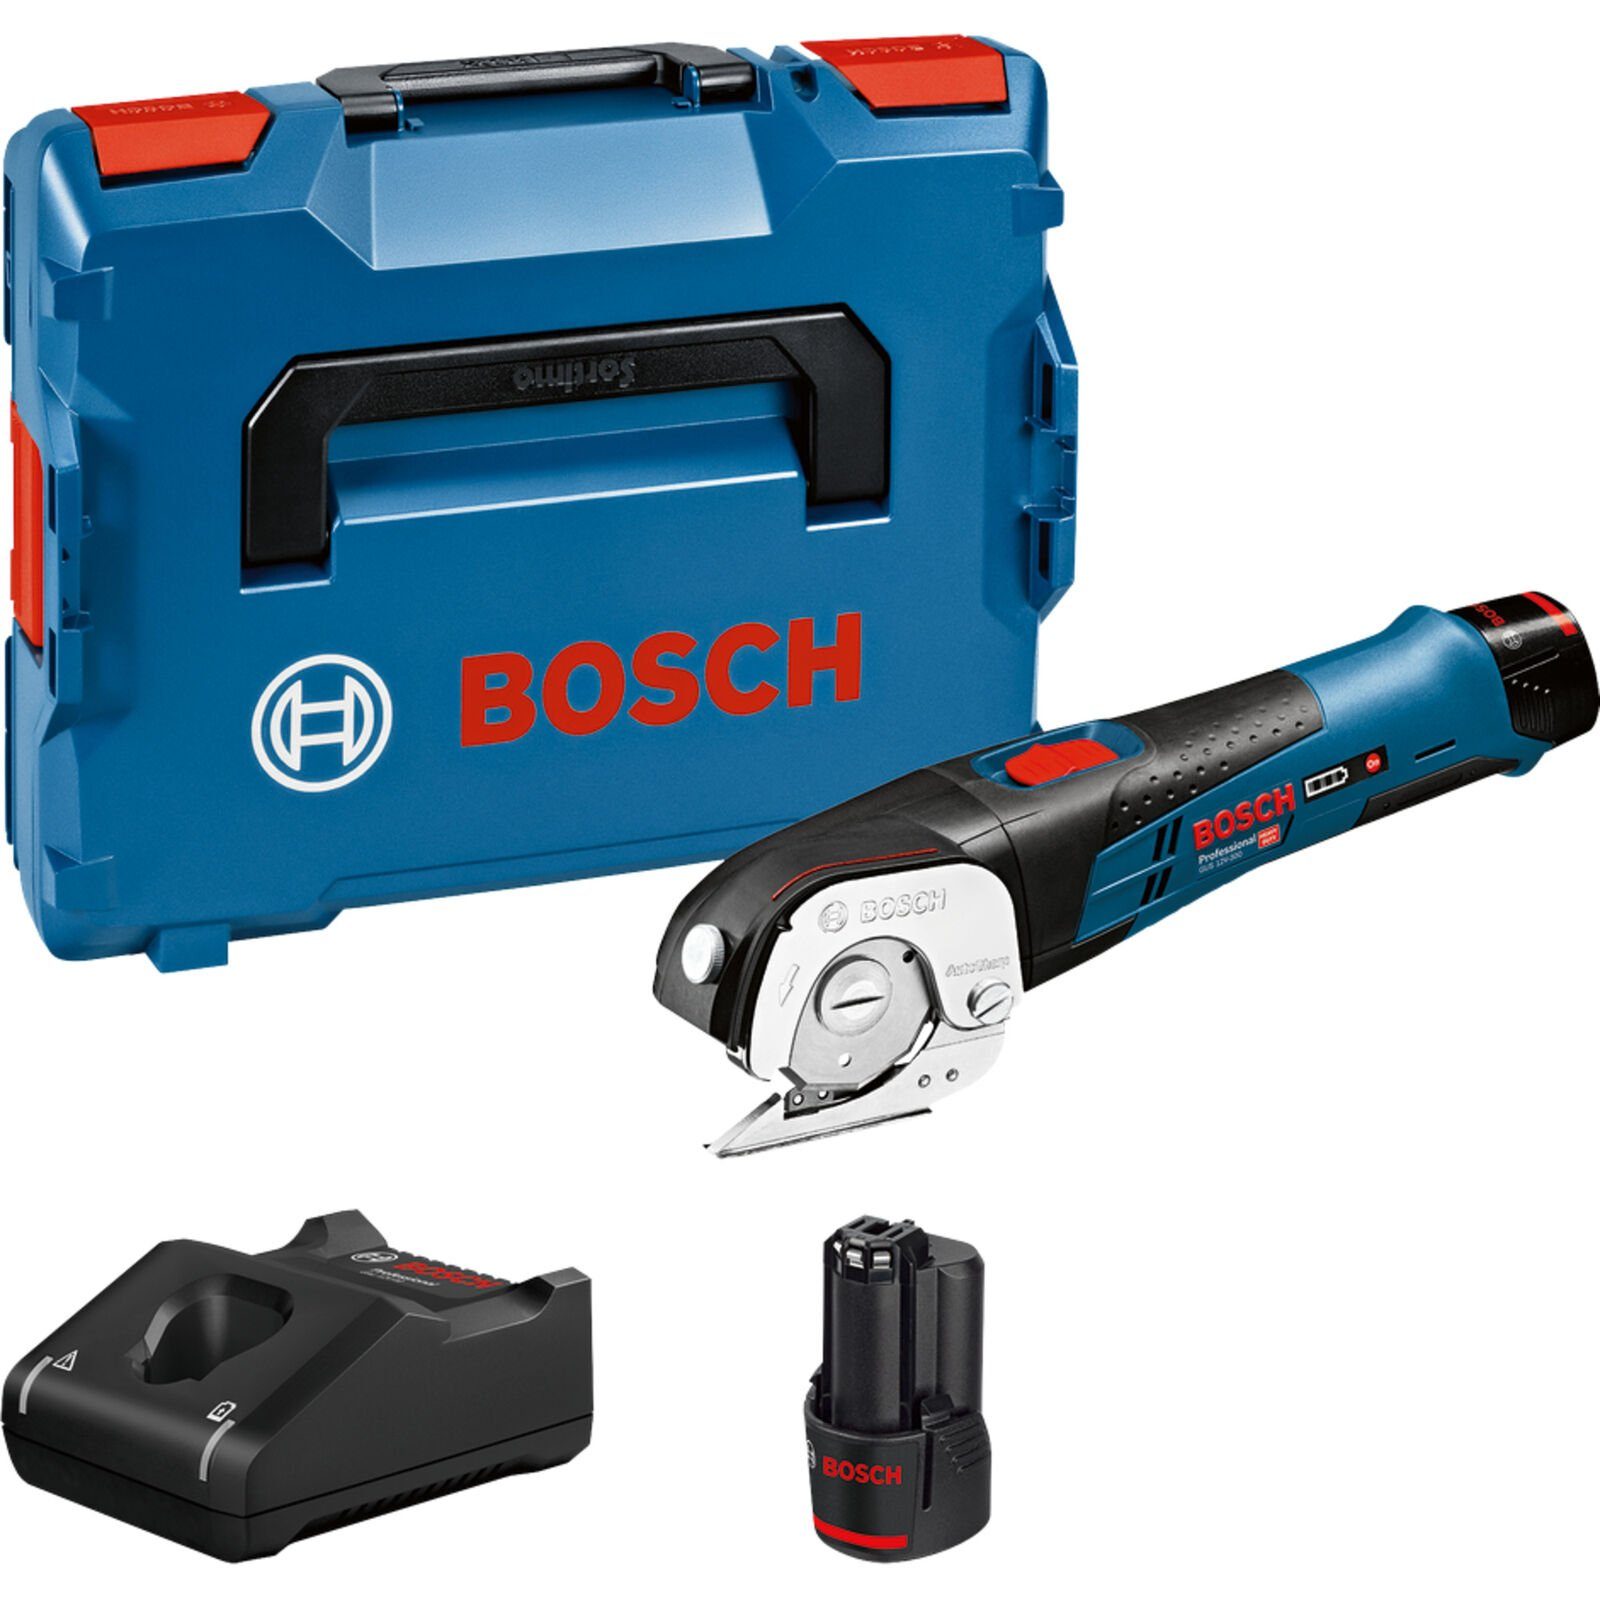 Bosch Professional BOSCH Akku-Universalschere Professional GUS 12V-300 Akku-Universalschere blau/schwarz | Akkuscheren